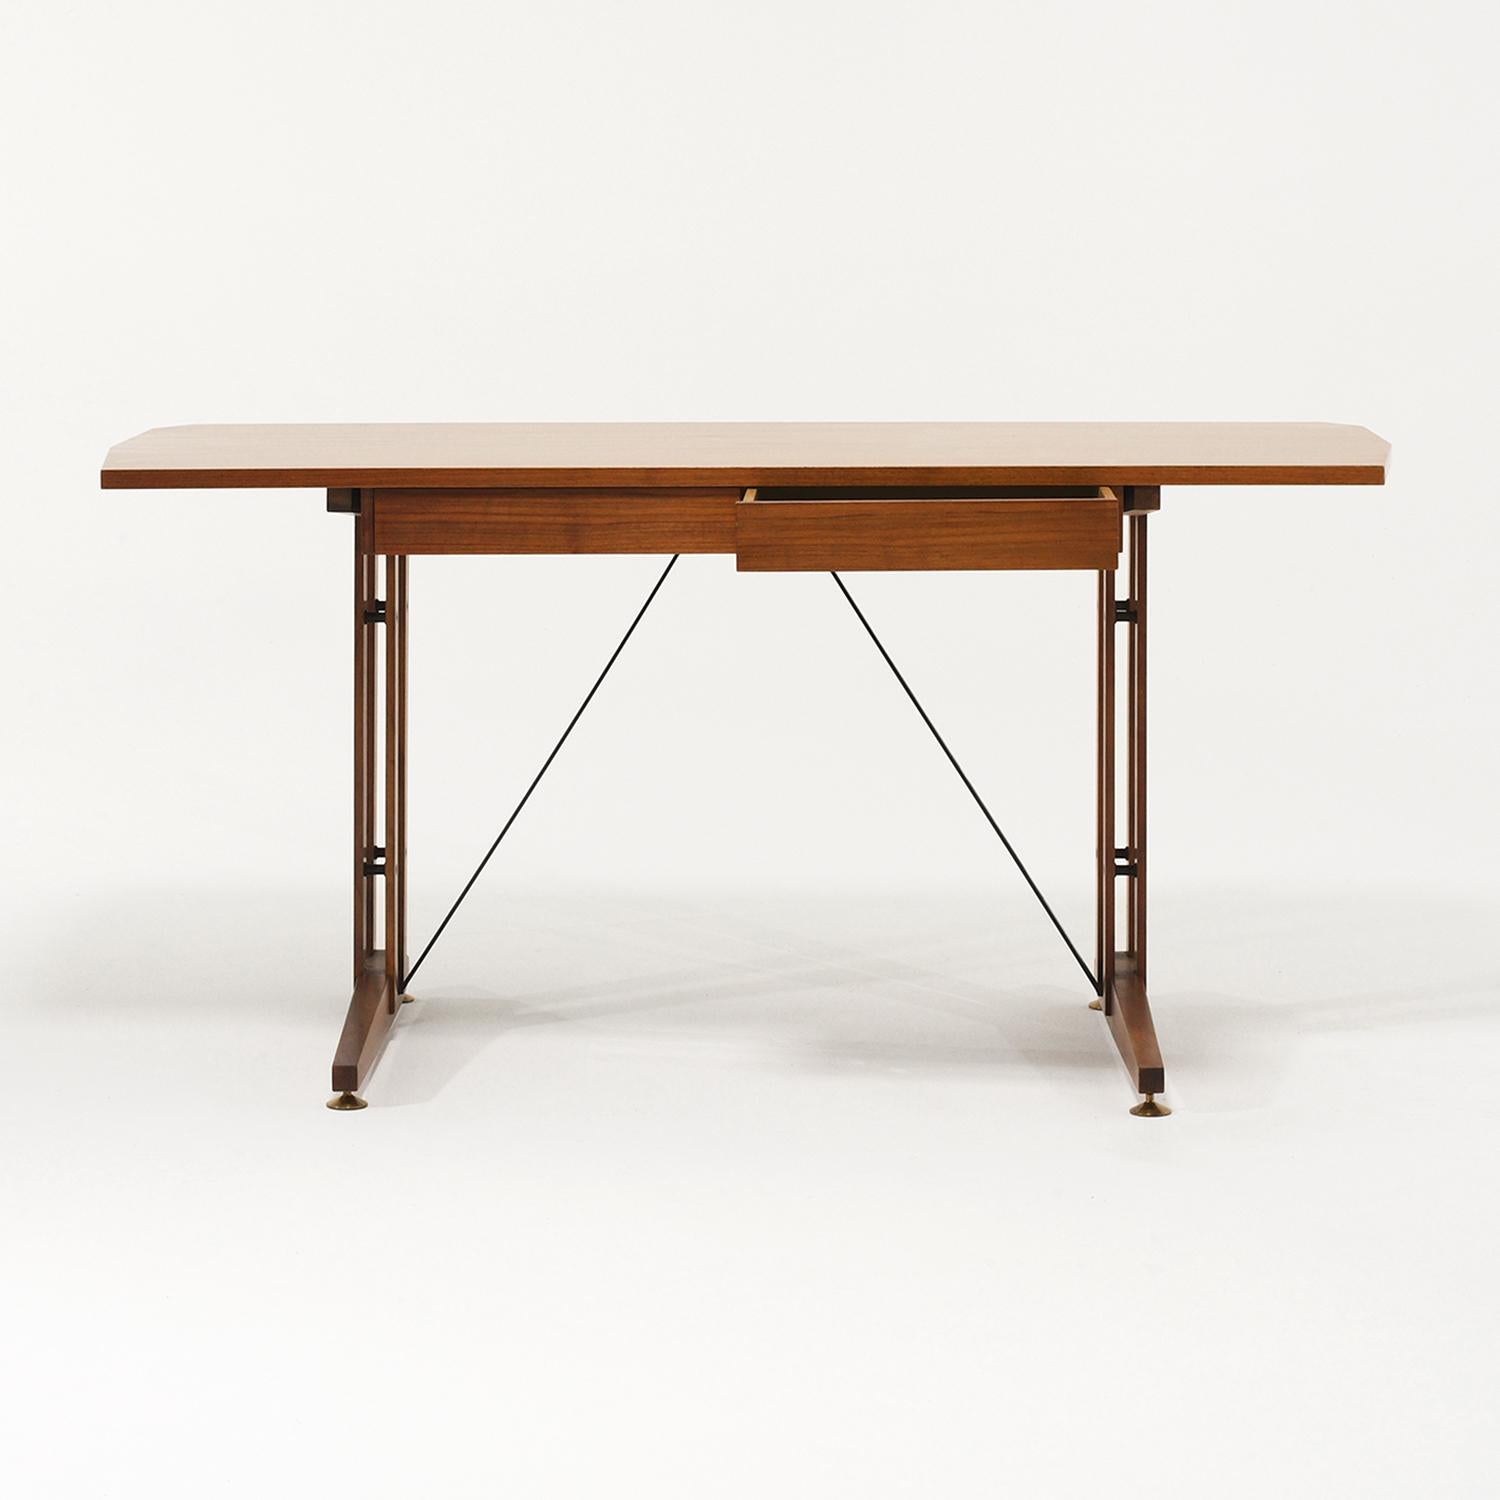 Ein rechteckiger italienischer Schreibtisch aus der Jahrhundertmitte, handgefertigt aus poliertem Nussbaumholz, mit zwei Schubladen in der Art von Carlo Ratti, in gutem Zustand. Die Tischplatte ist an den schmalen Seiten eckig und die Beine stehen